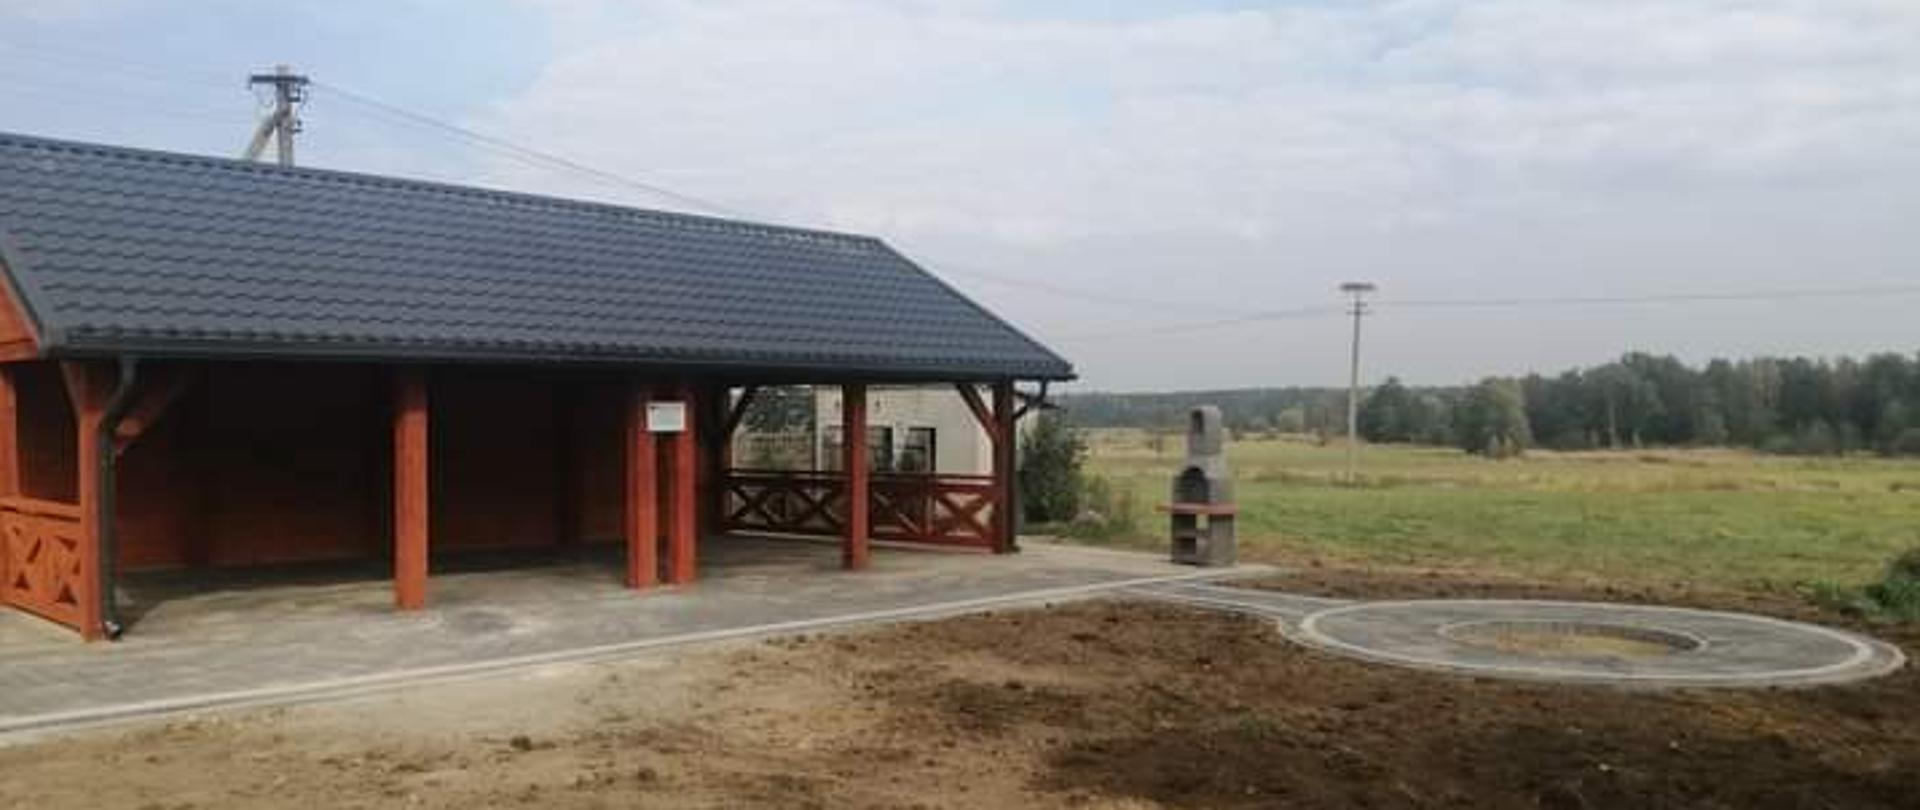 Utworzenie miejsca rekreacji i wypoczynku przy budynku świetlicy wiejskiej w miejscowości Wólka Proszewska - zdjęcie altany